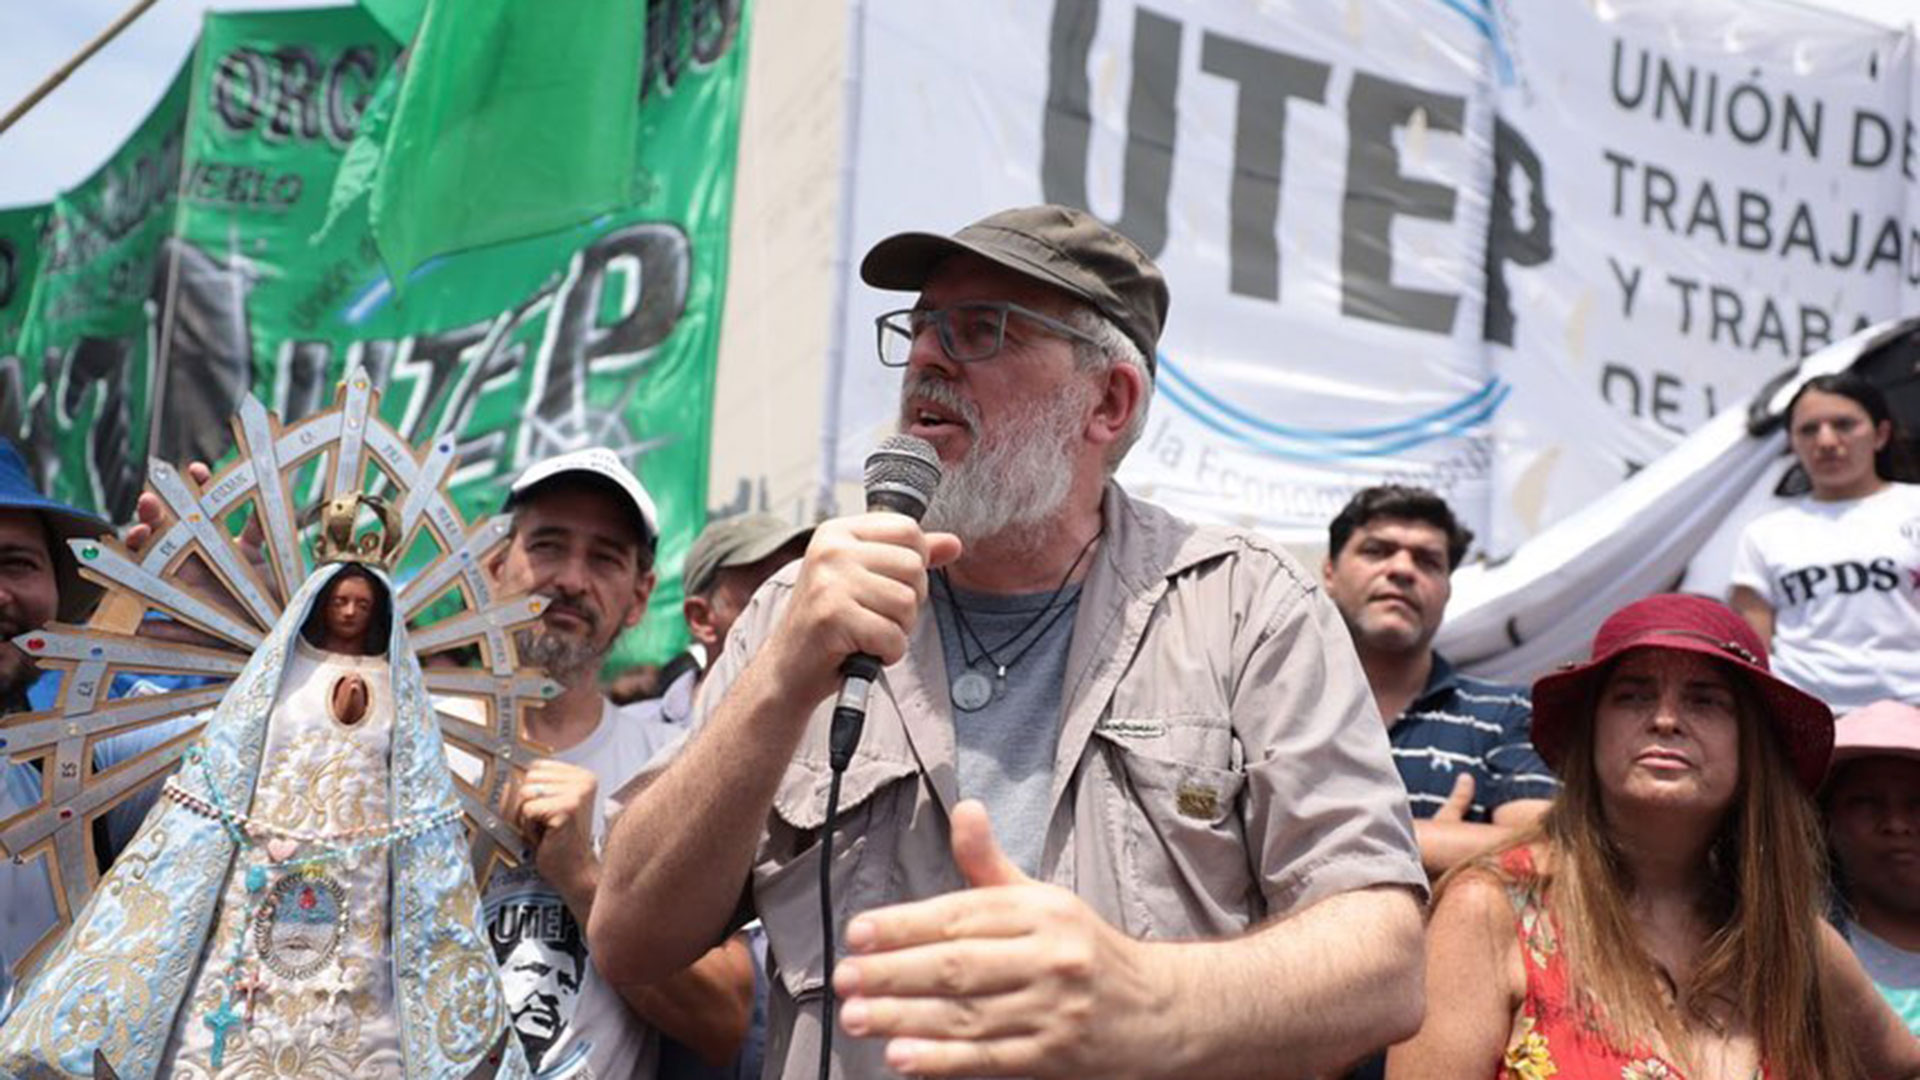 Esteban "Gringo" Castro propuso realizar "La Navidad de los pobres" si el Gobierno no da solución a los reclamos de los movimientos sociales oficialistas